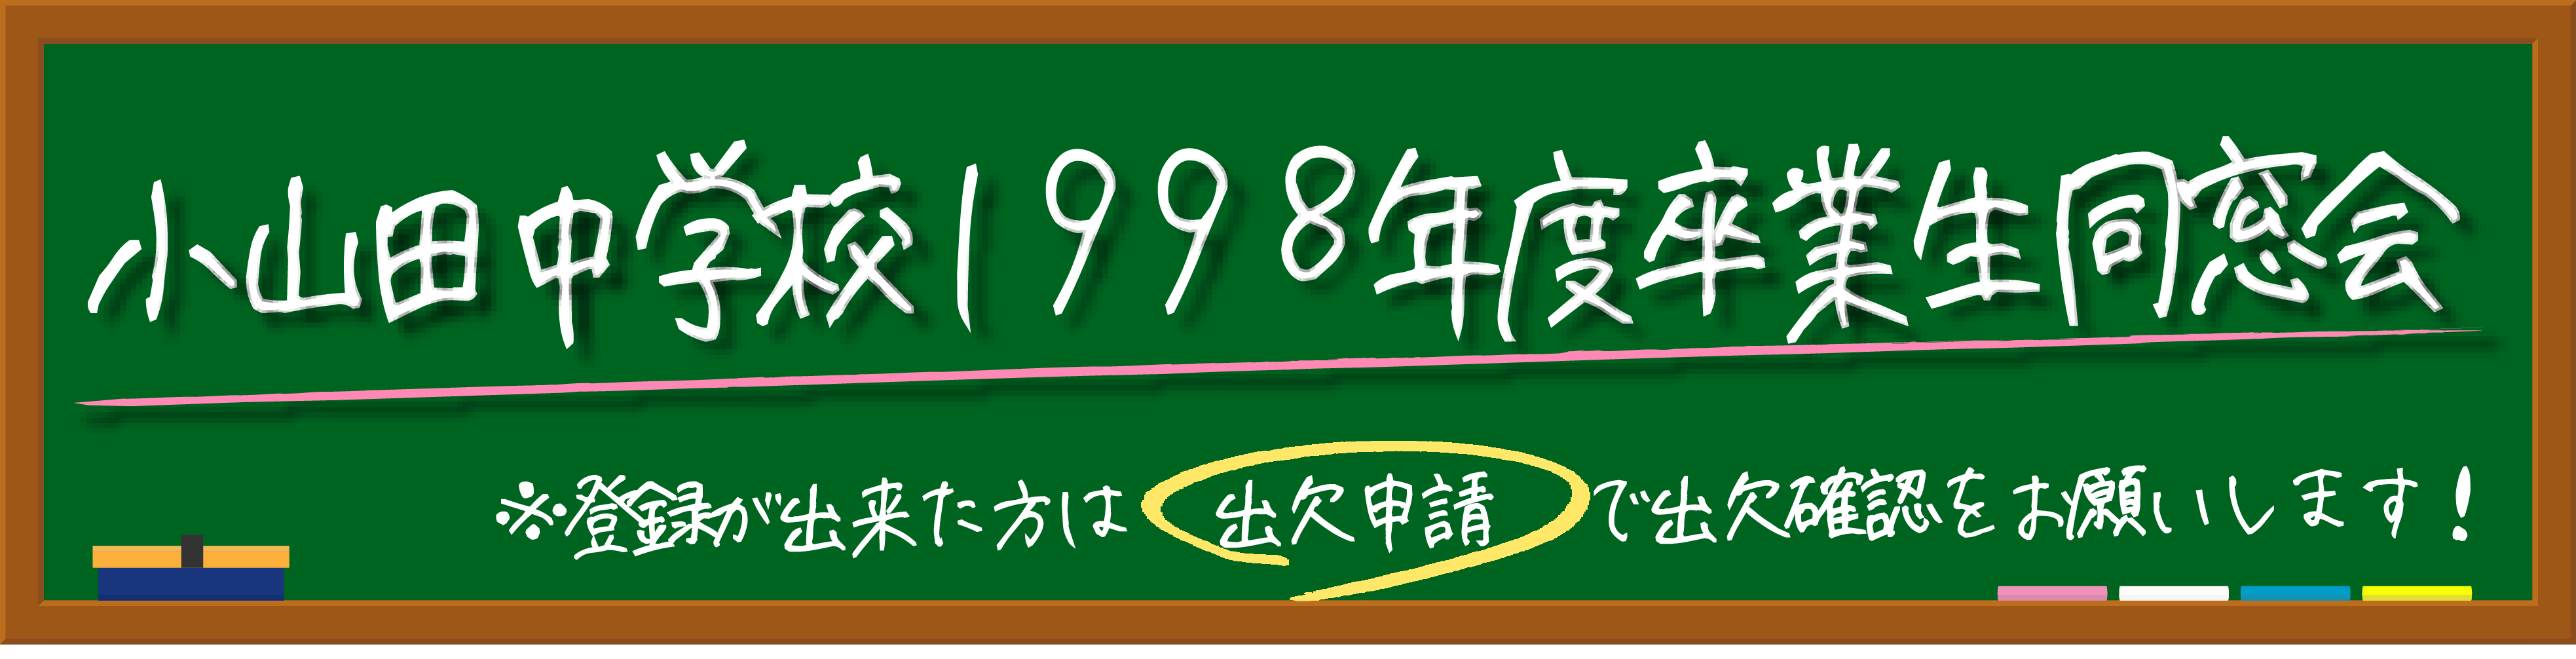 小山田中学校1998年度卒業生同窓会